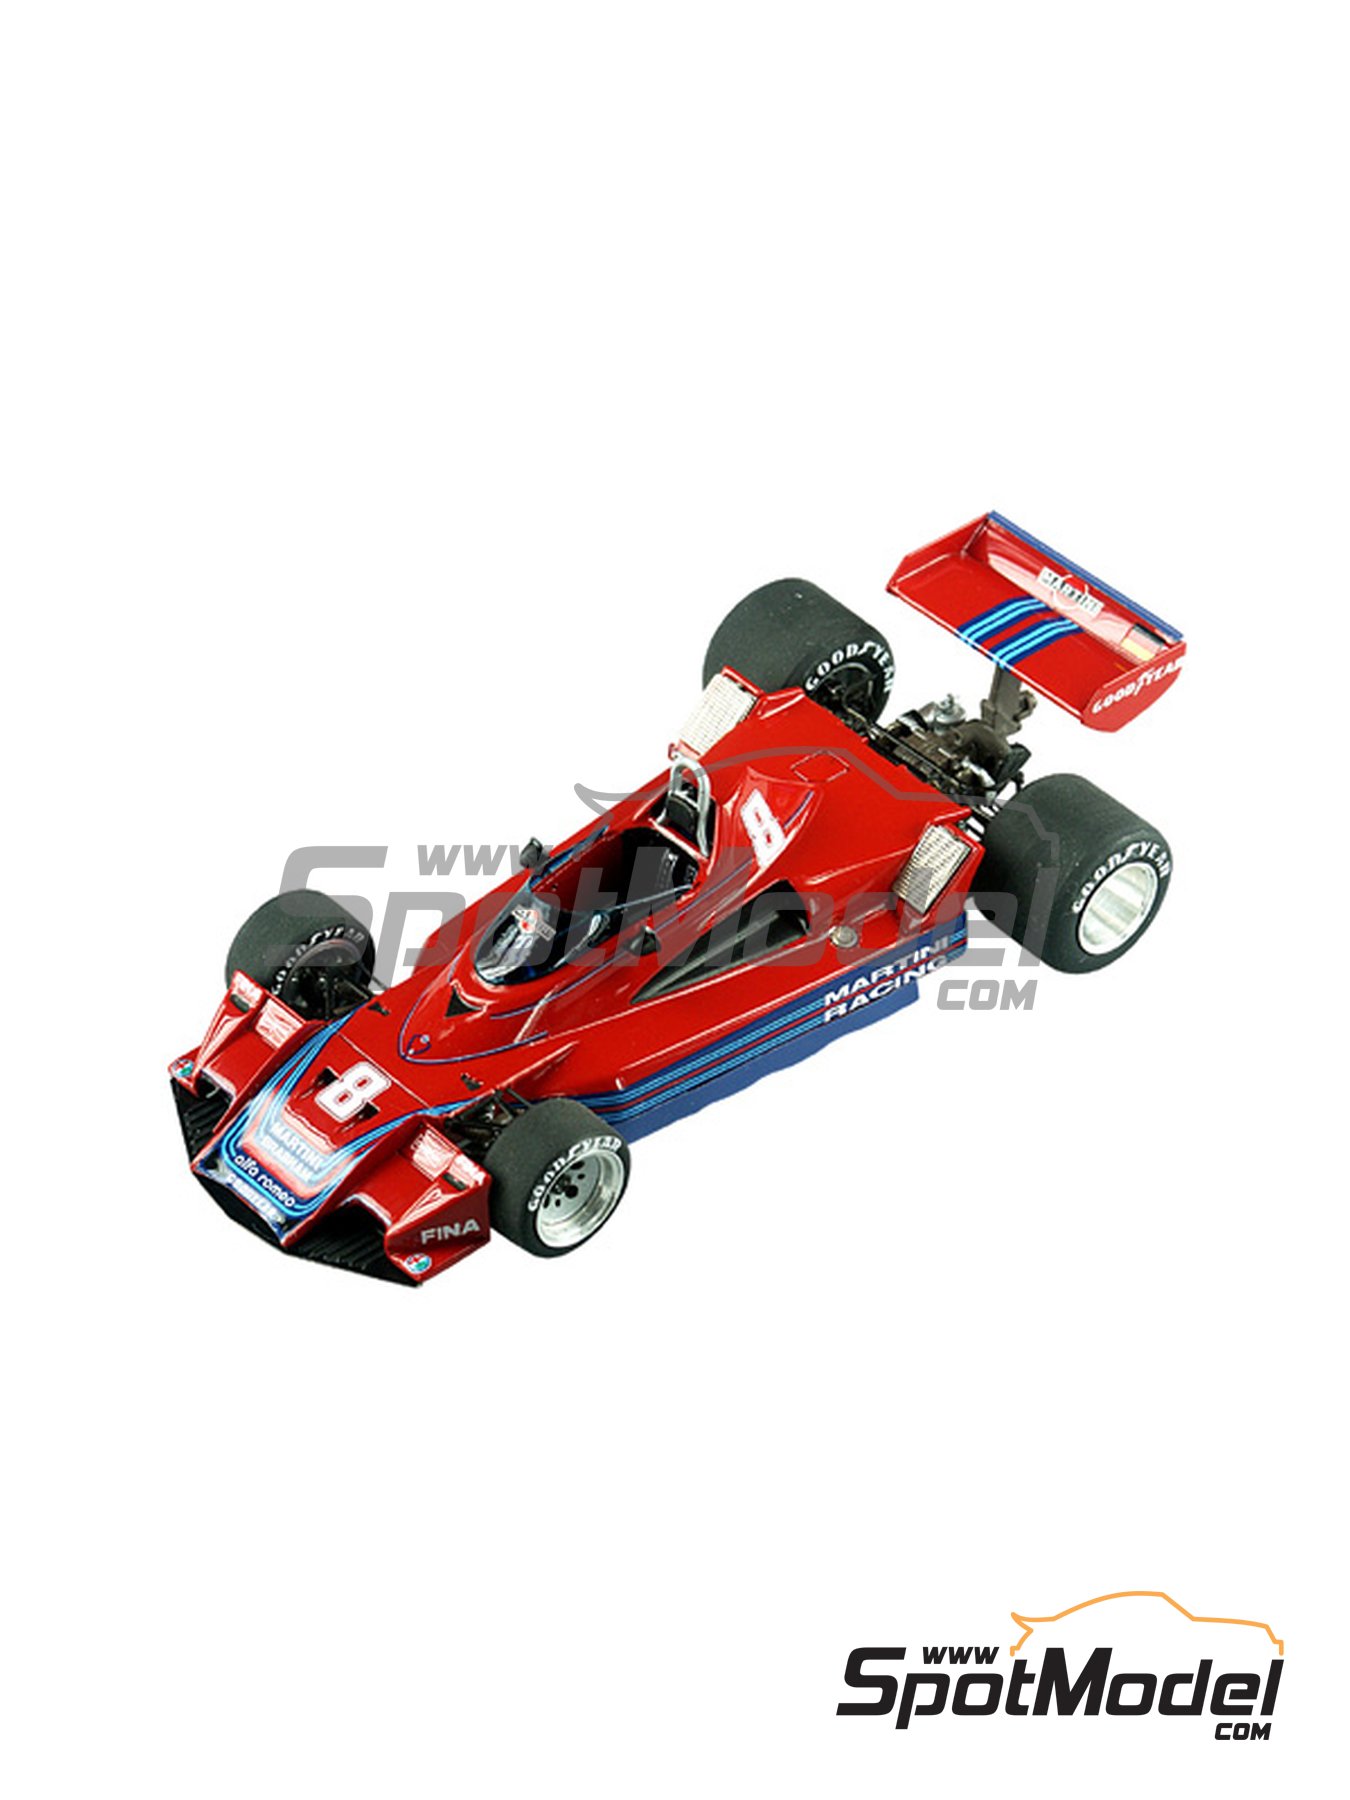 Tameo Kits SLK009: Car scale model kit 1/43 scale - Brabham Alfa